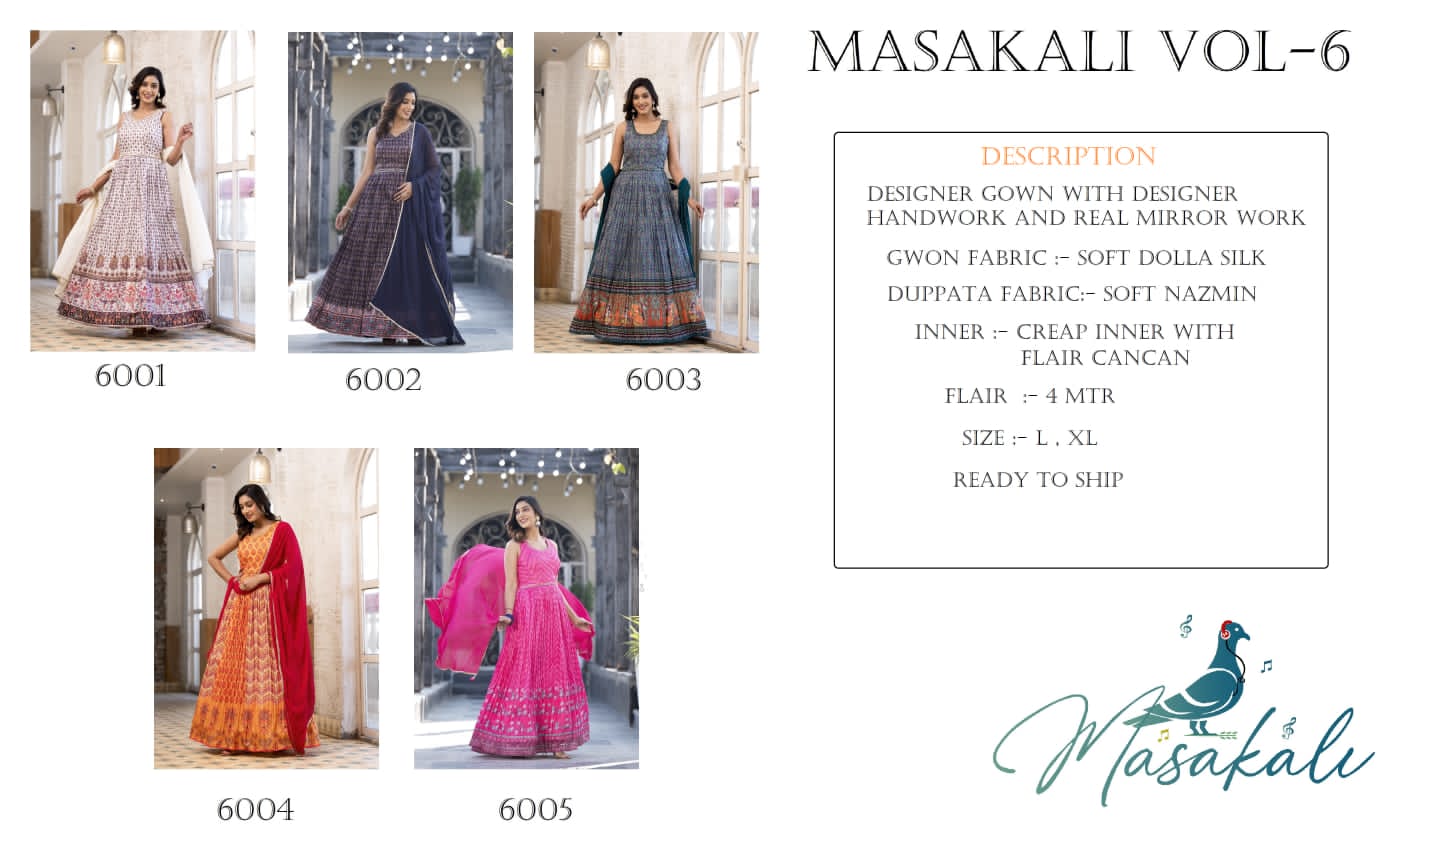 MASAKALI VOL-06 6001 TO 6005